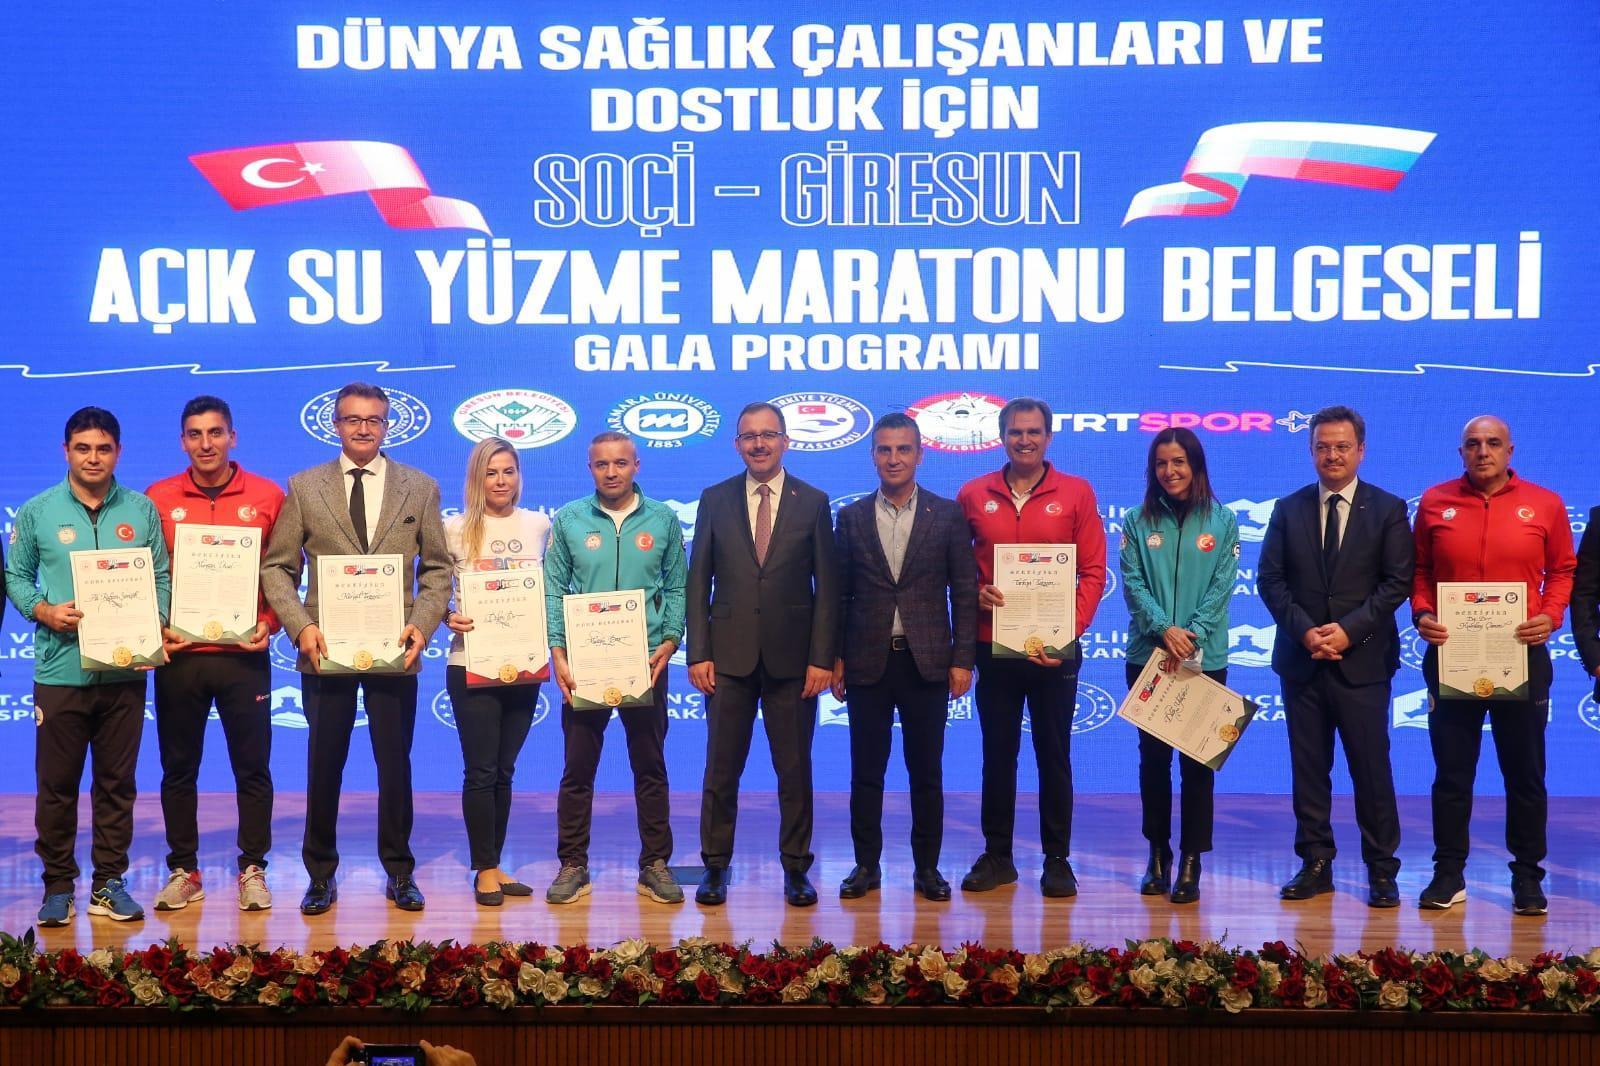 Bakan Kasapoğlu, Soçi-Giresun Yüzme Maratonu Belgeselinin galasına katıldı